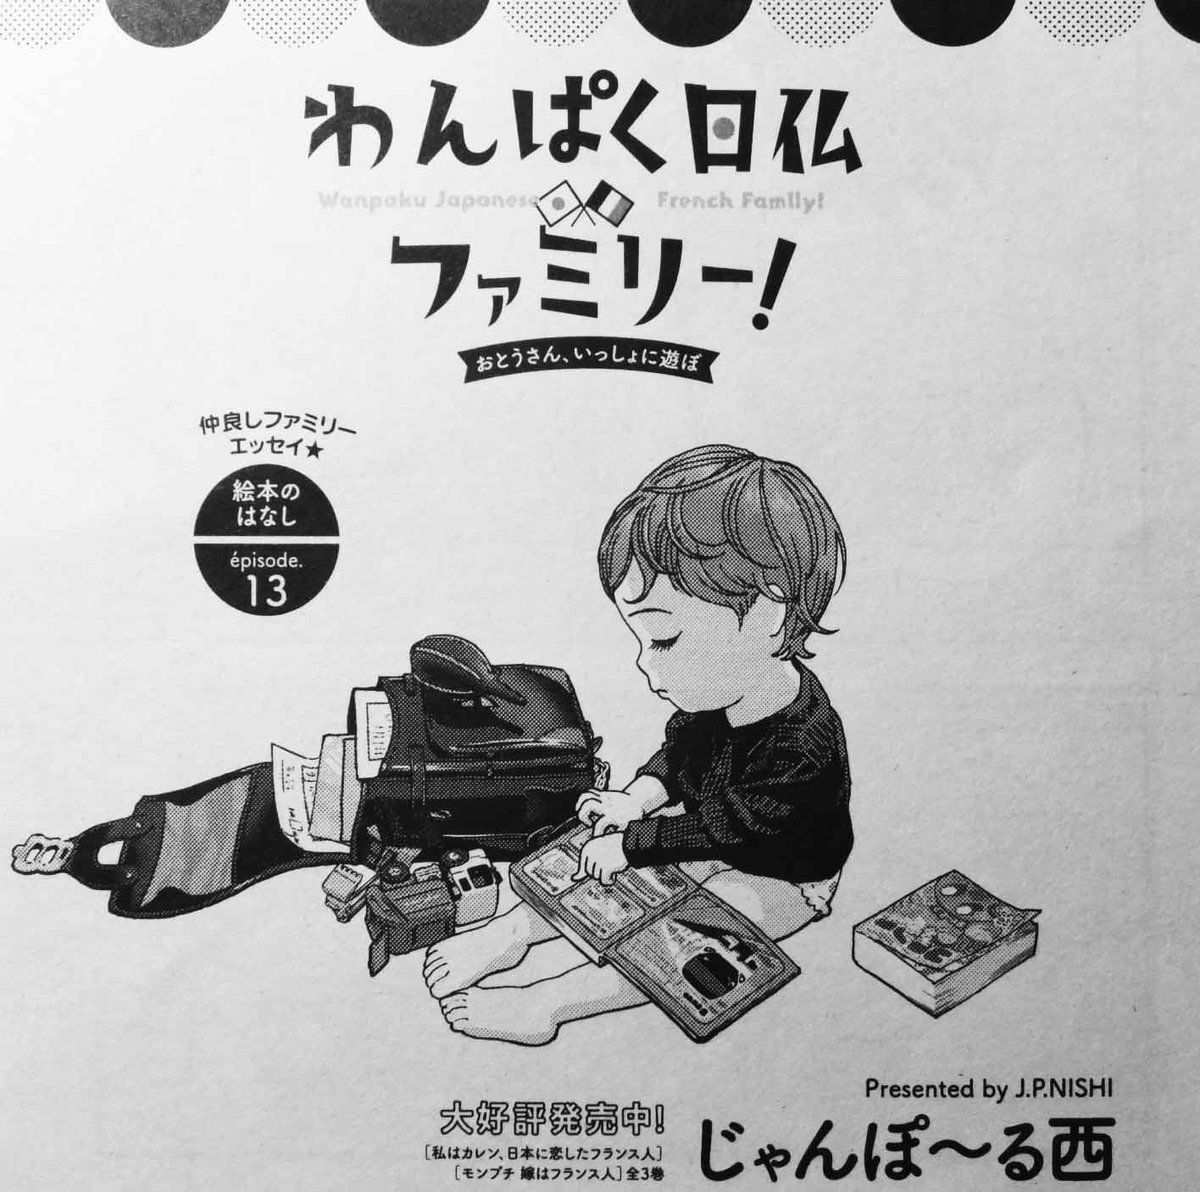 このマンガ雑誌がすごい第1位に輝いたフィール・ヤング1月号発売中です!
「わんぱく日仏ファミリー!」も載ってます。
#わんぱく日仏ファミリー 